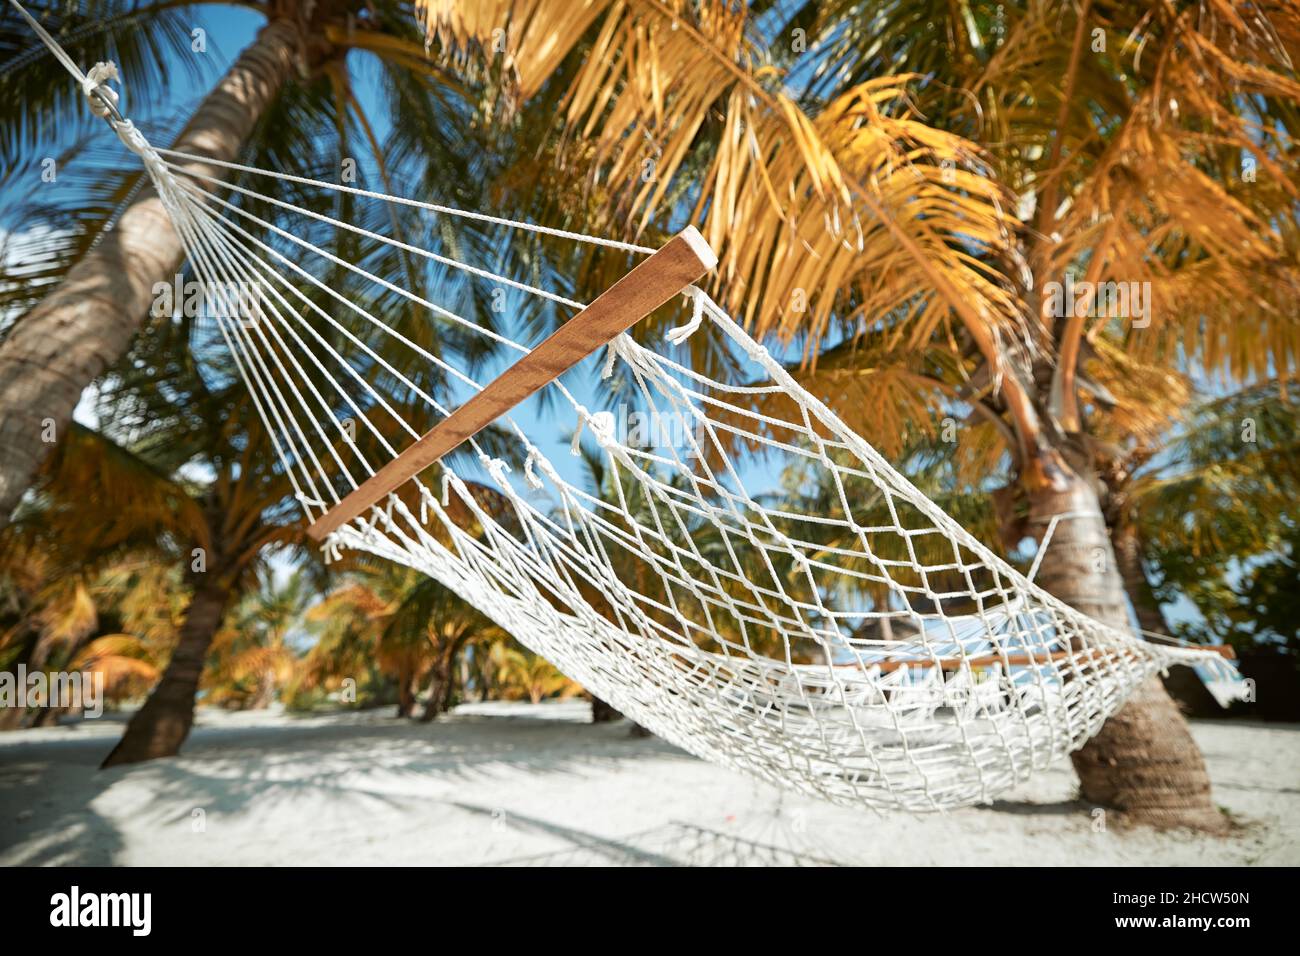 Hängematte hängen zwischen zwei Kokospalmen am weißen Sandstrand. Themen Reisen, Entspannung und Urlaub. Stockfoto